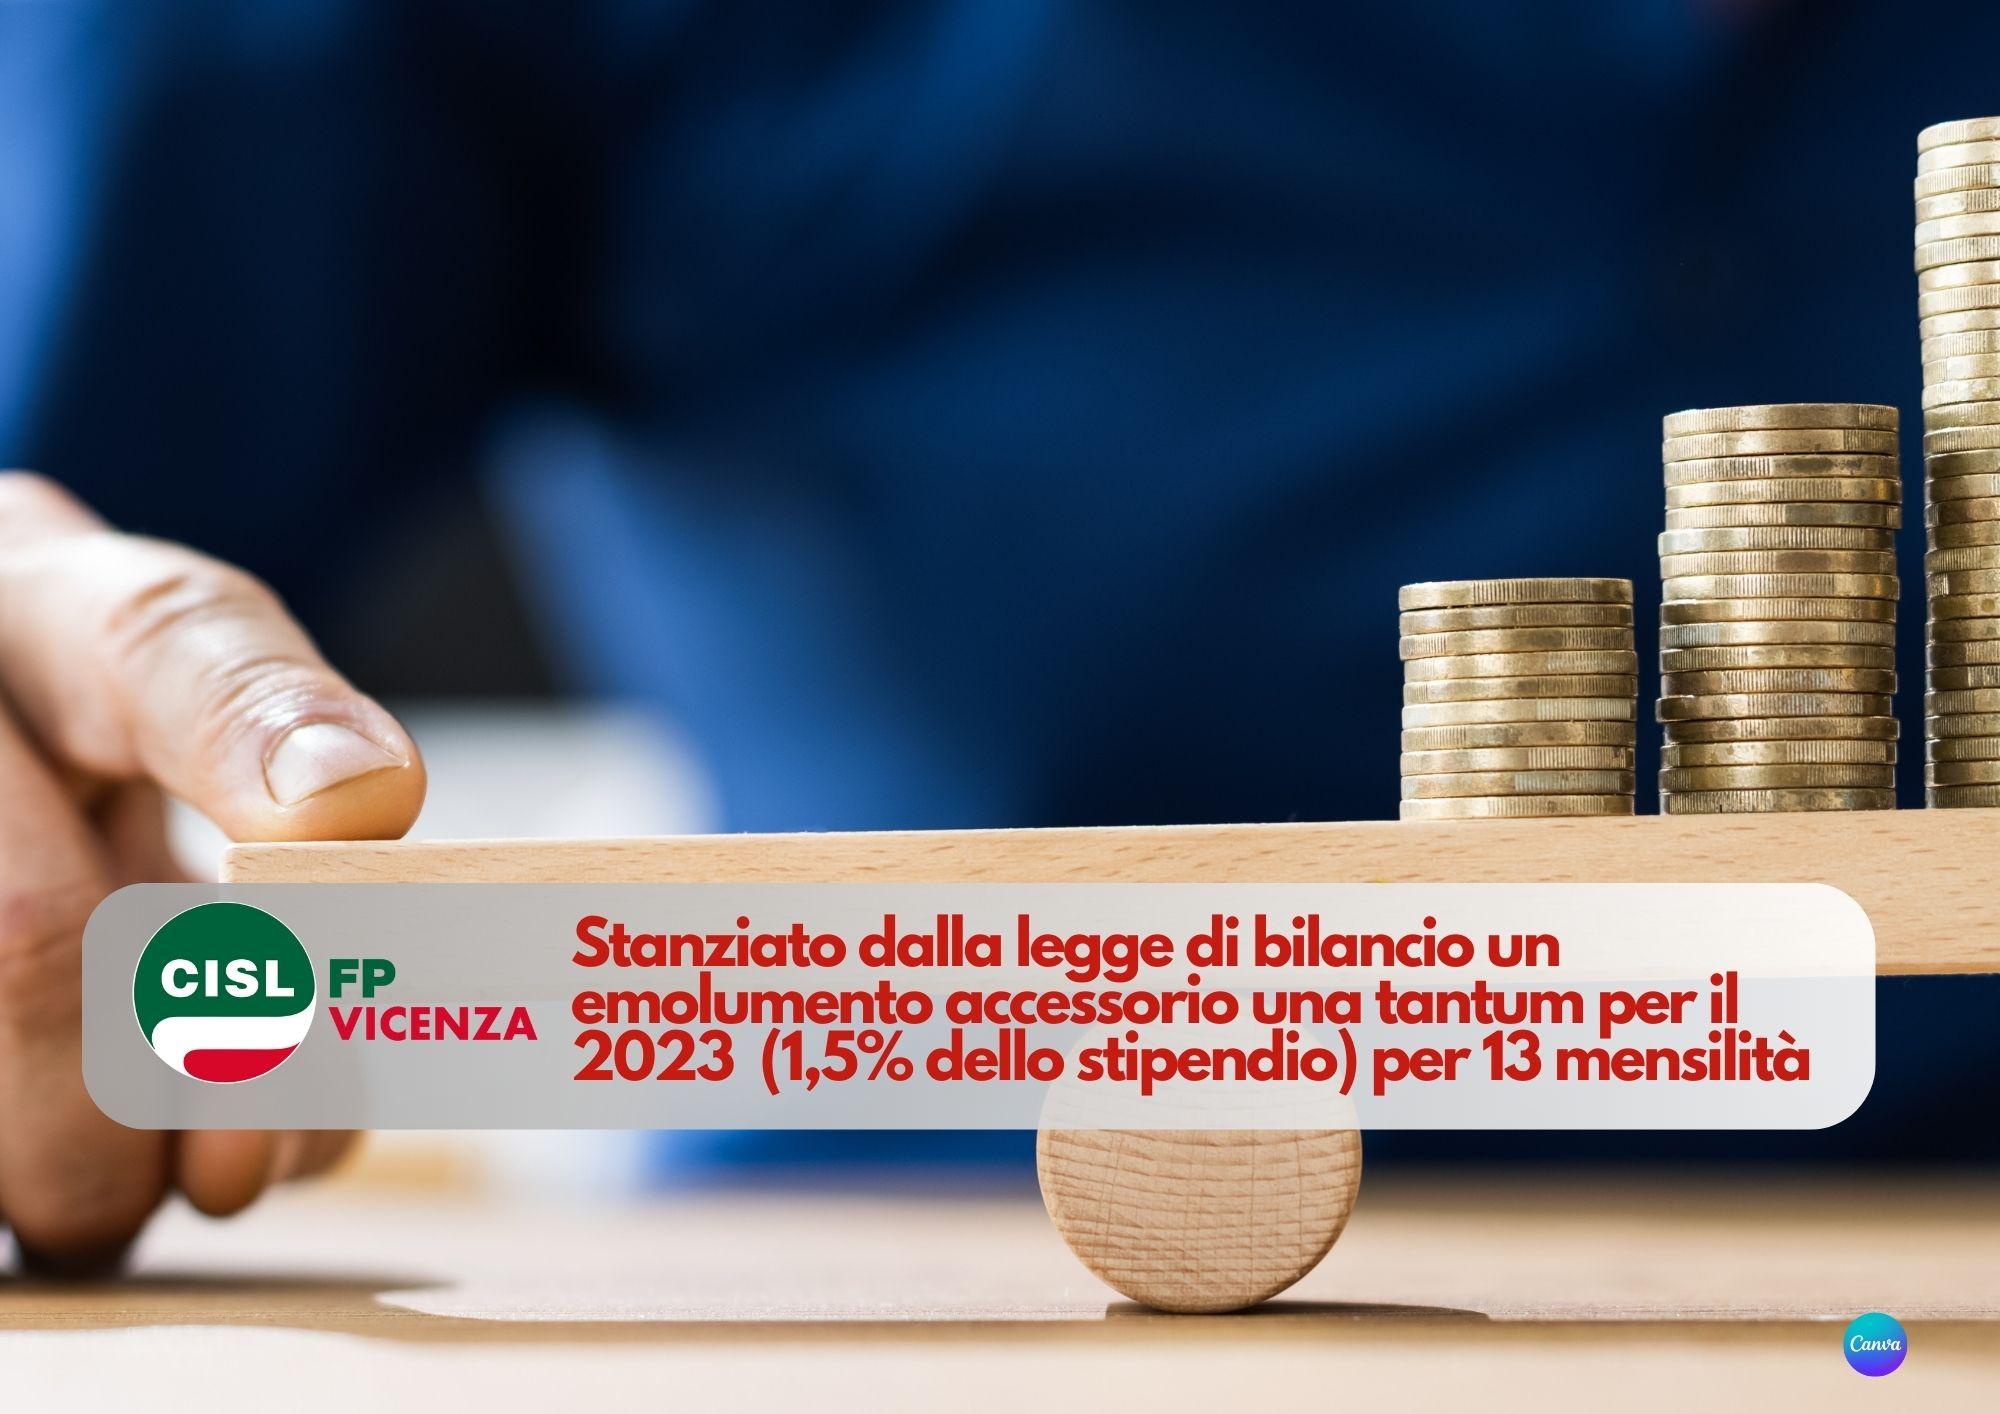 CISL FP Vicenza. Pubblico impiego. Emolumento accessorio una tantum 2023 1,5% dello stipendio per 13 mensilità